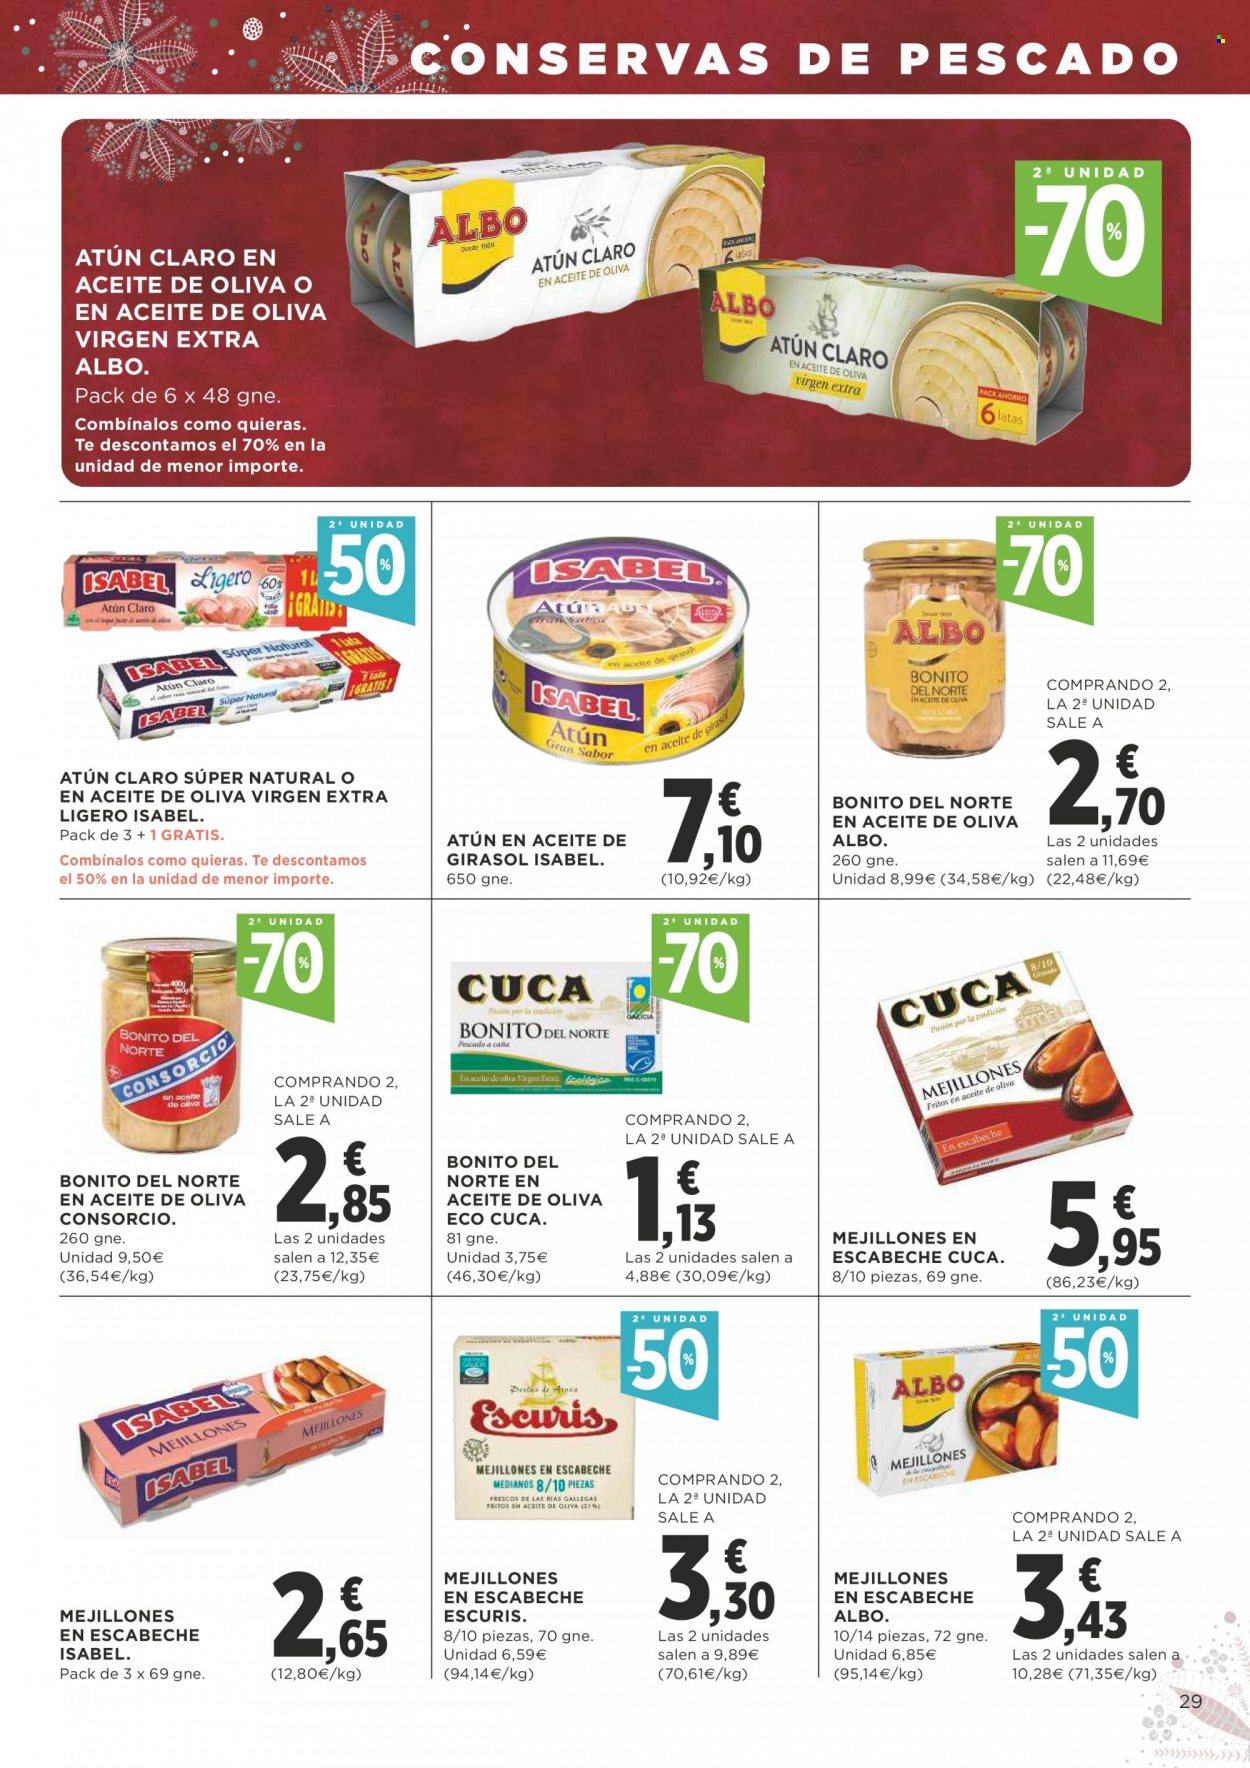 thumbnail - Folleto actual Supercor supermercados - 02/12/21 - 15/12/21 - Ventas - bonito del norte, mejillones, atún en lata. Página 29.